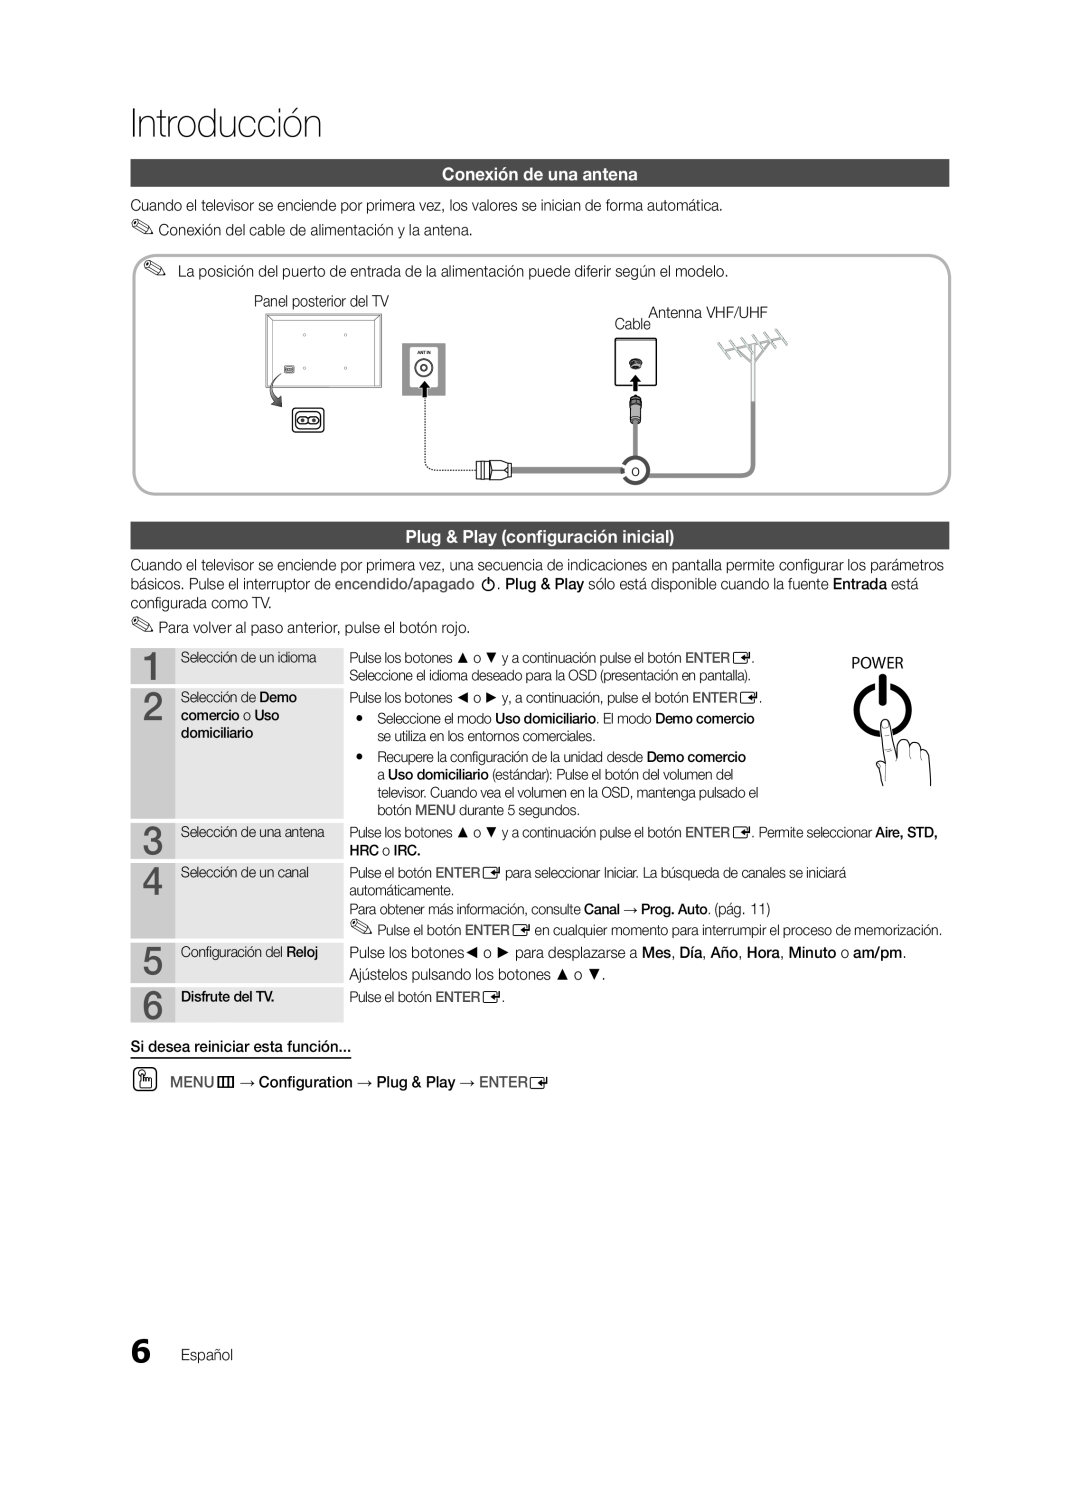 Samsung UN22D5003, UN19D4003 user manual Conexión de una antena, Plug & Play configuración inicial, Introducción 